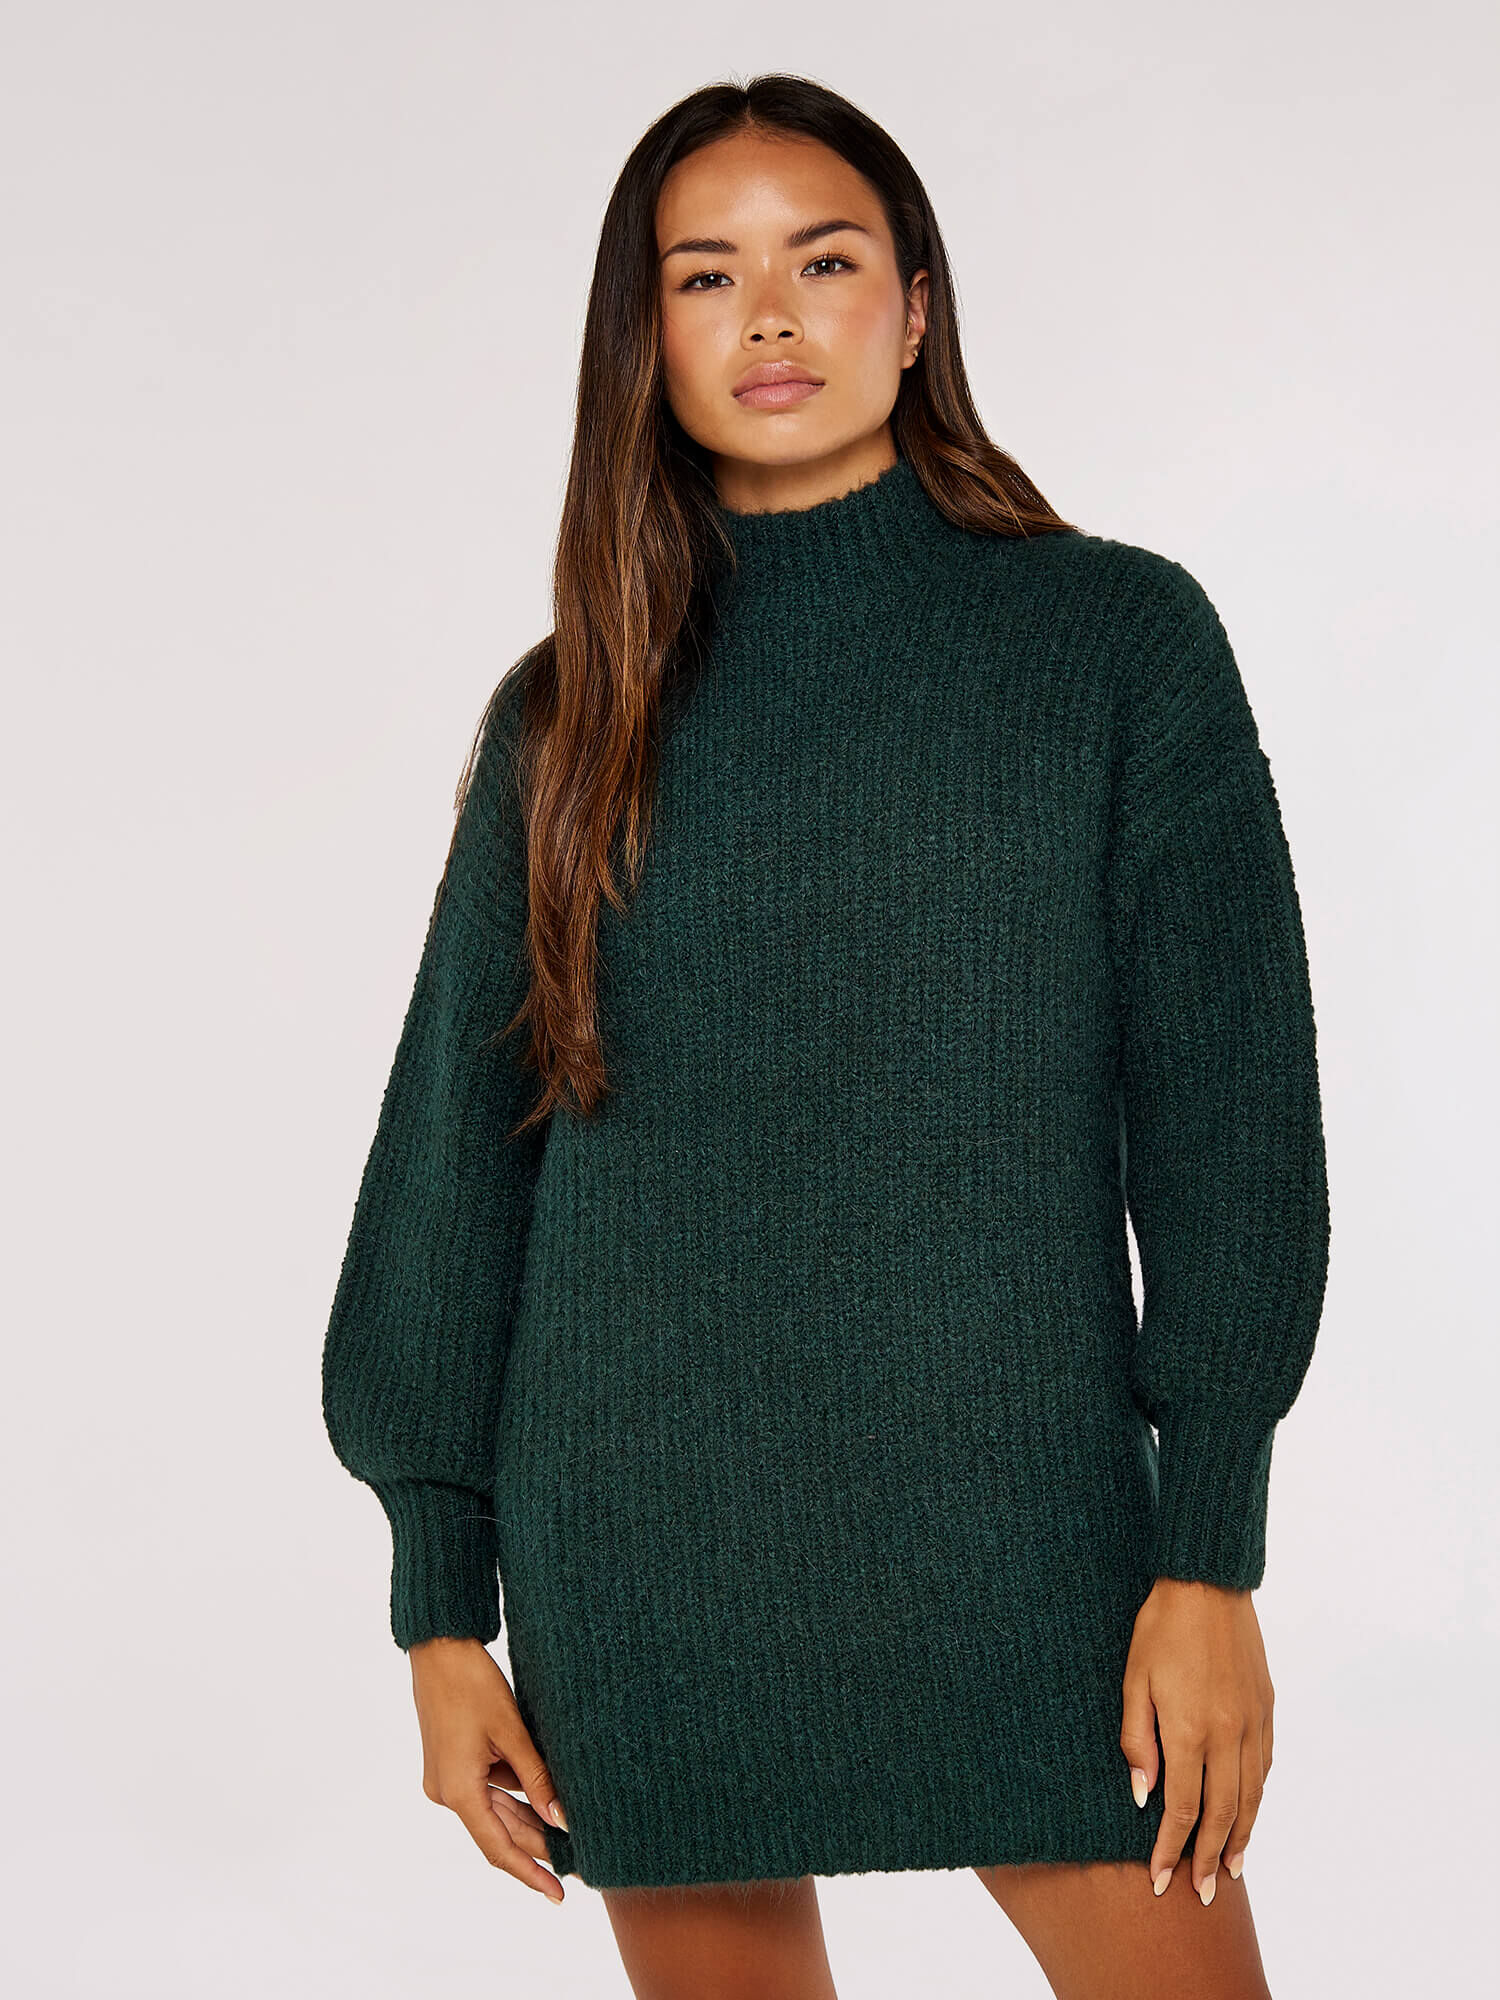 knitted jumper dress